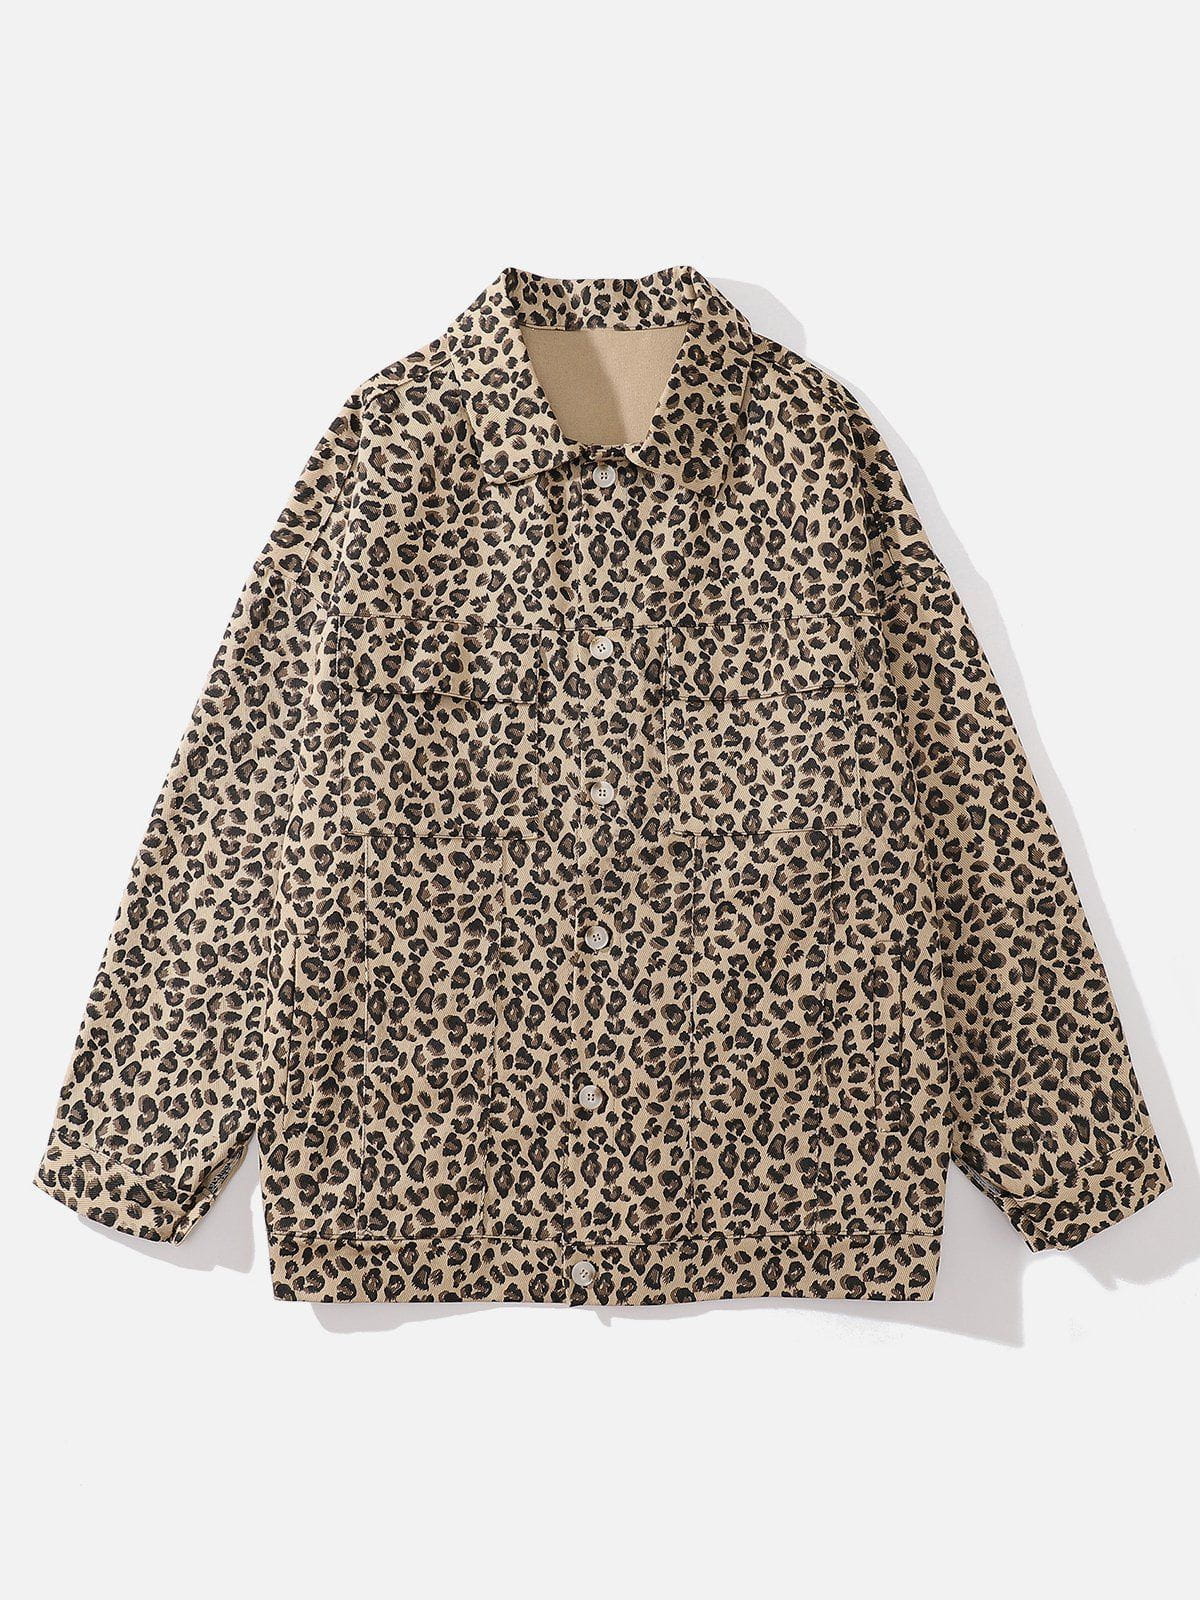 Eprezzy® - Leopard Print Lapel Jacket Streetwear Fashion - eprezzy.com